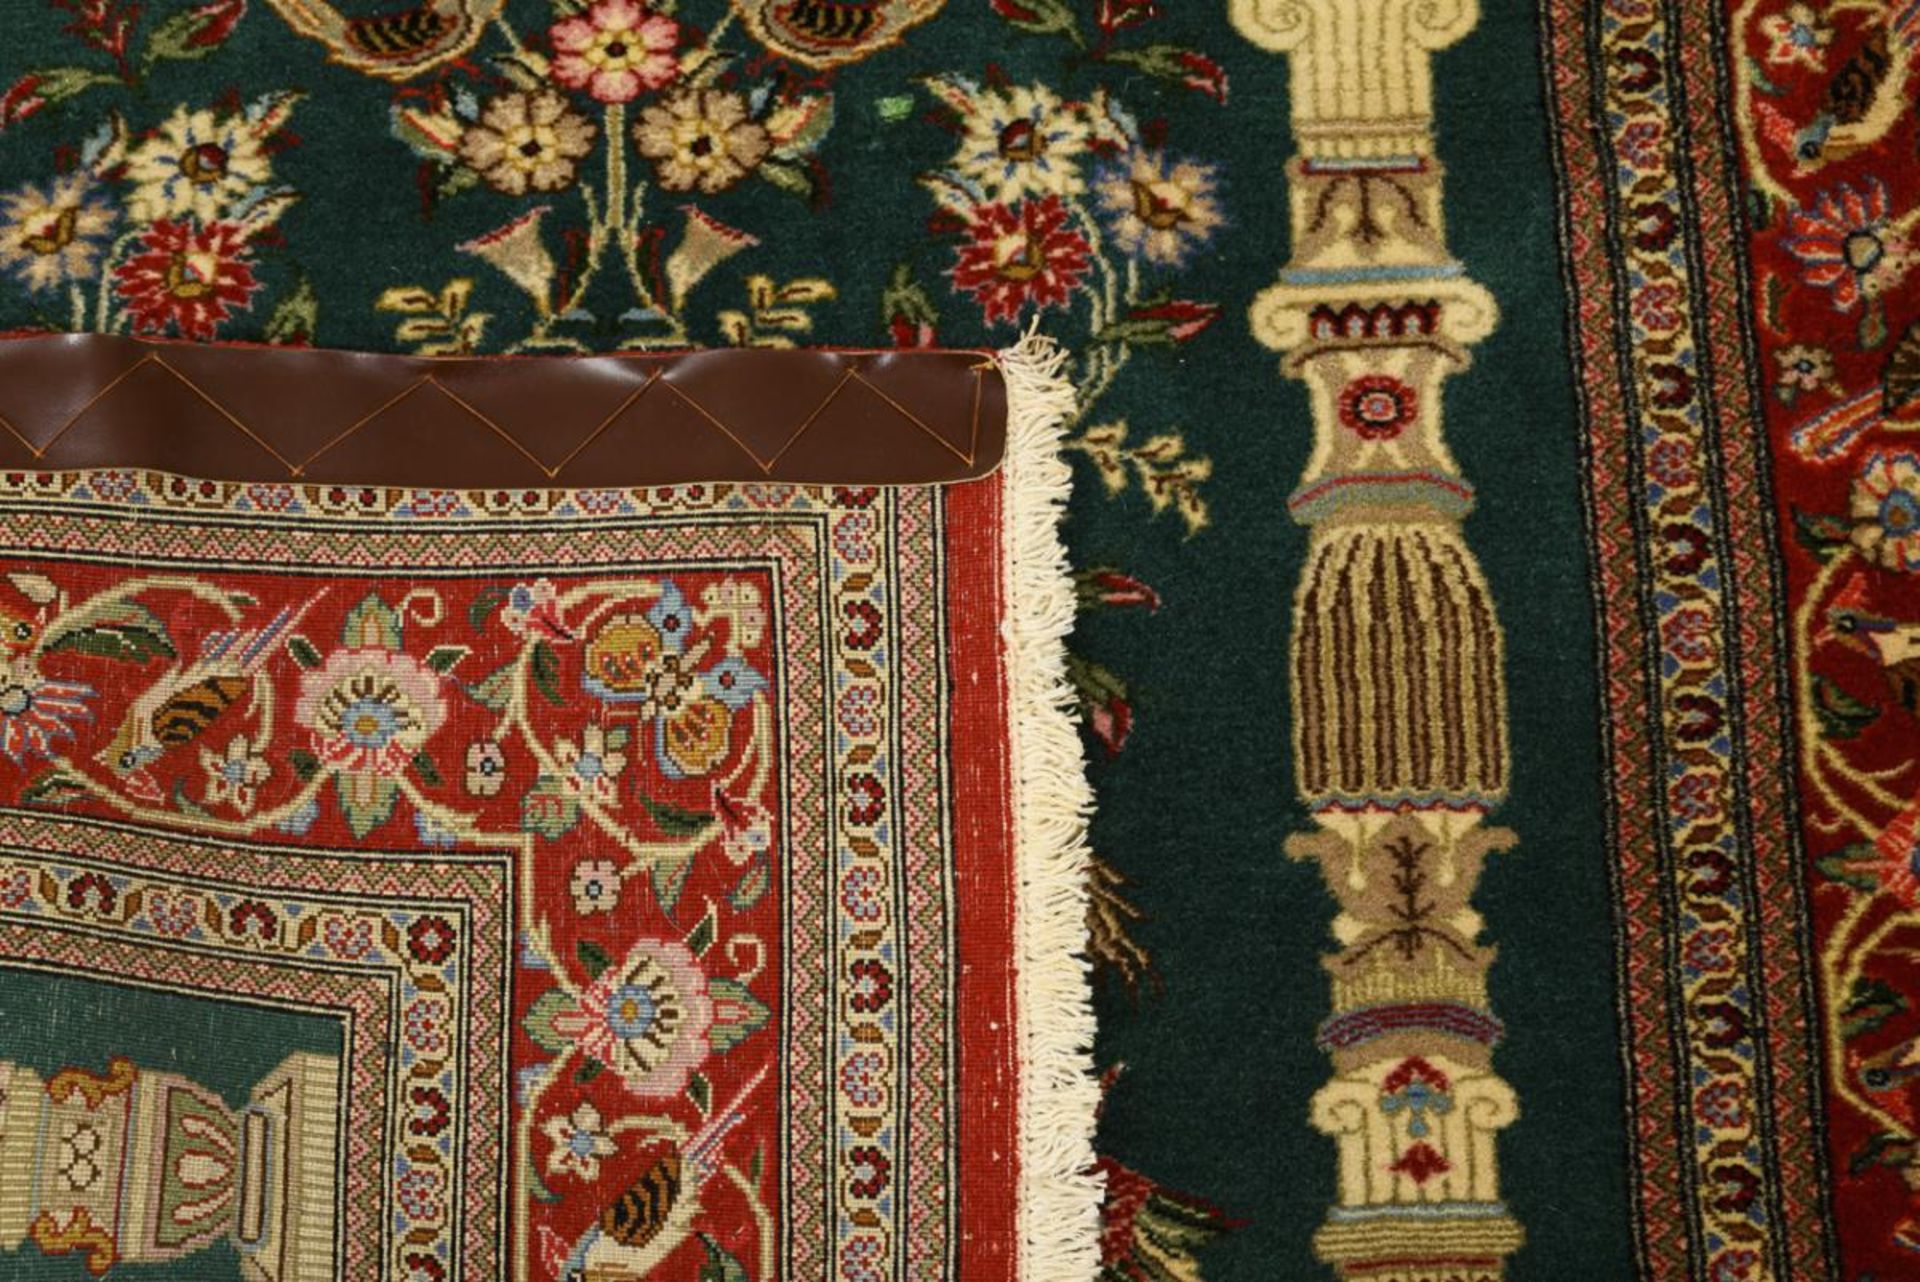 Orientalischer Nischenteppich mit prächtigem Vasenmotiv und Vögeln. - Bild 2 aus 2